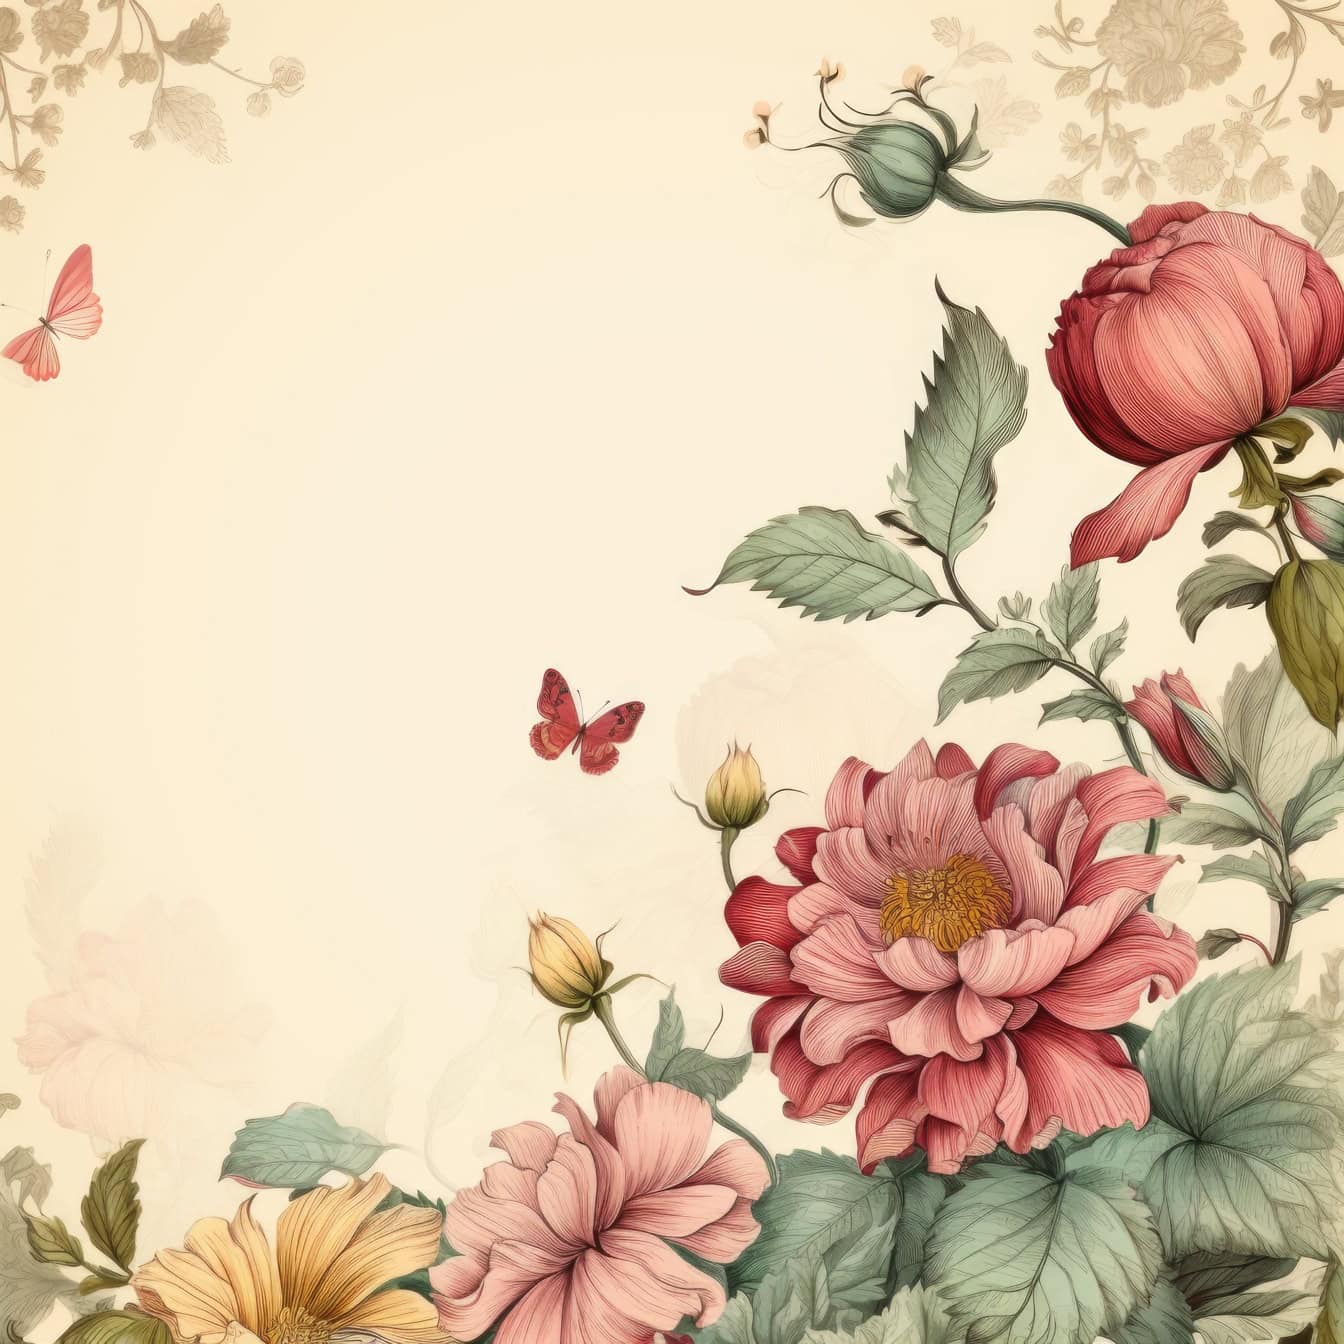 Акварельная графика в старинном стиле с цветами и бабочками